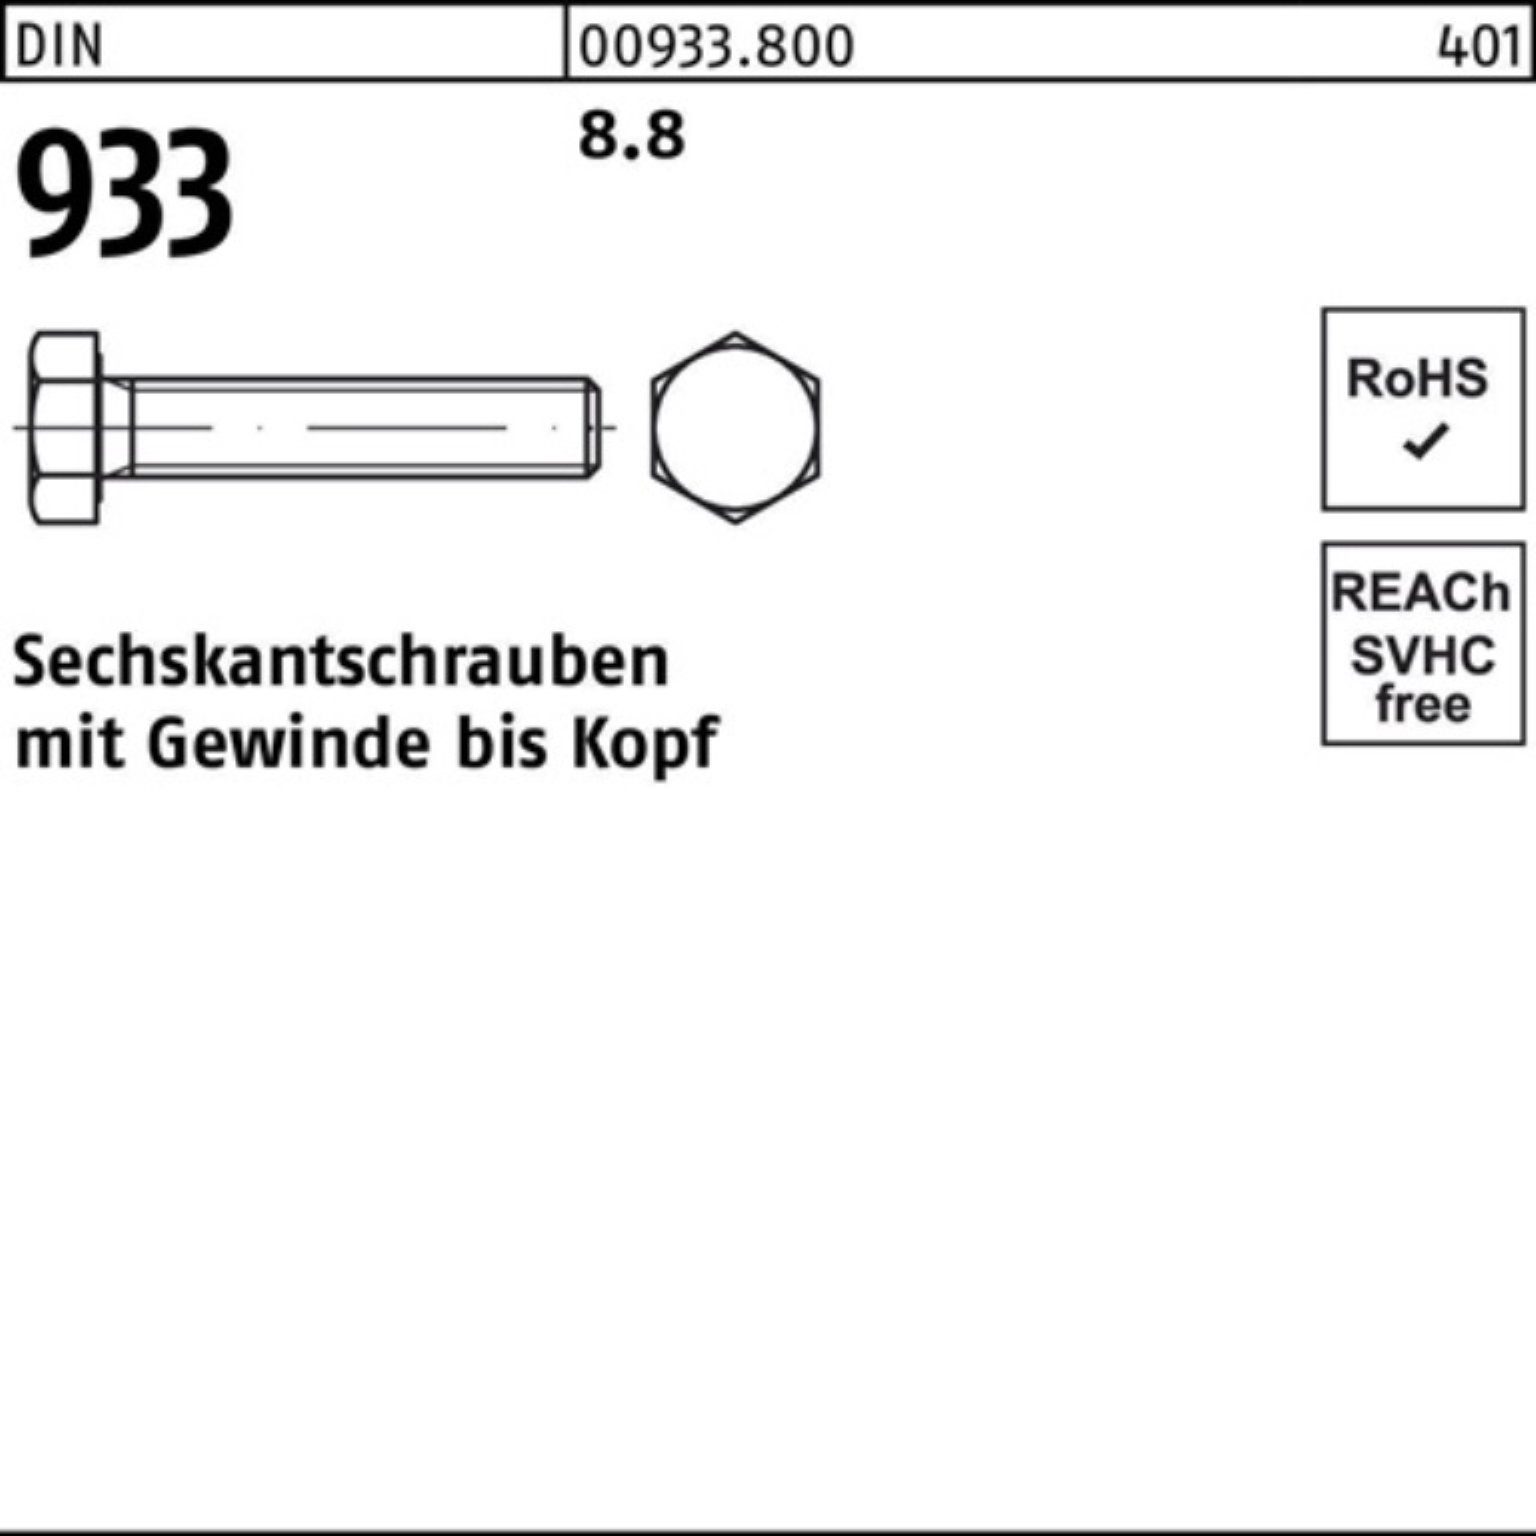 1 100er DIN Reyher Sechskantschraube M16x 8.8 Sechskantschraube 230 Pack 933 VG DIN Stück 933